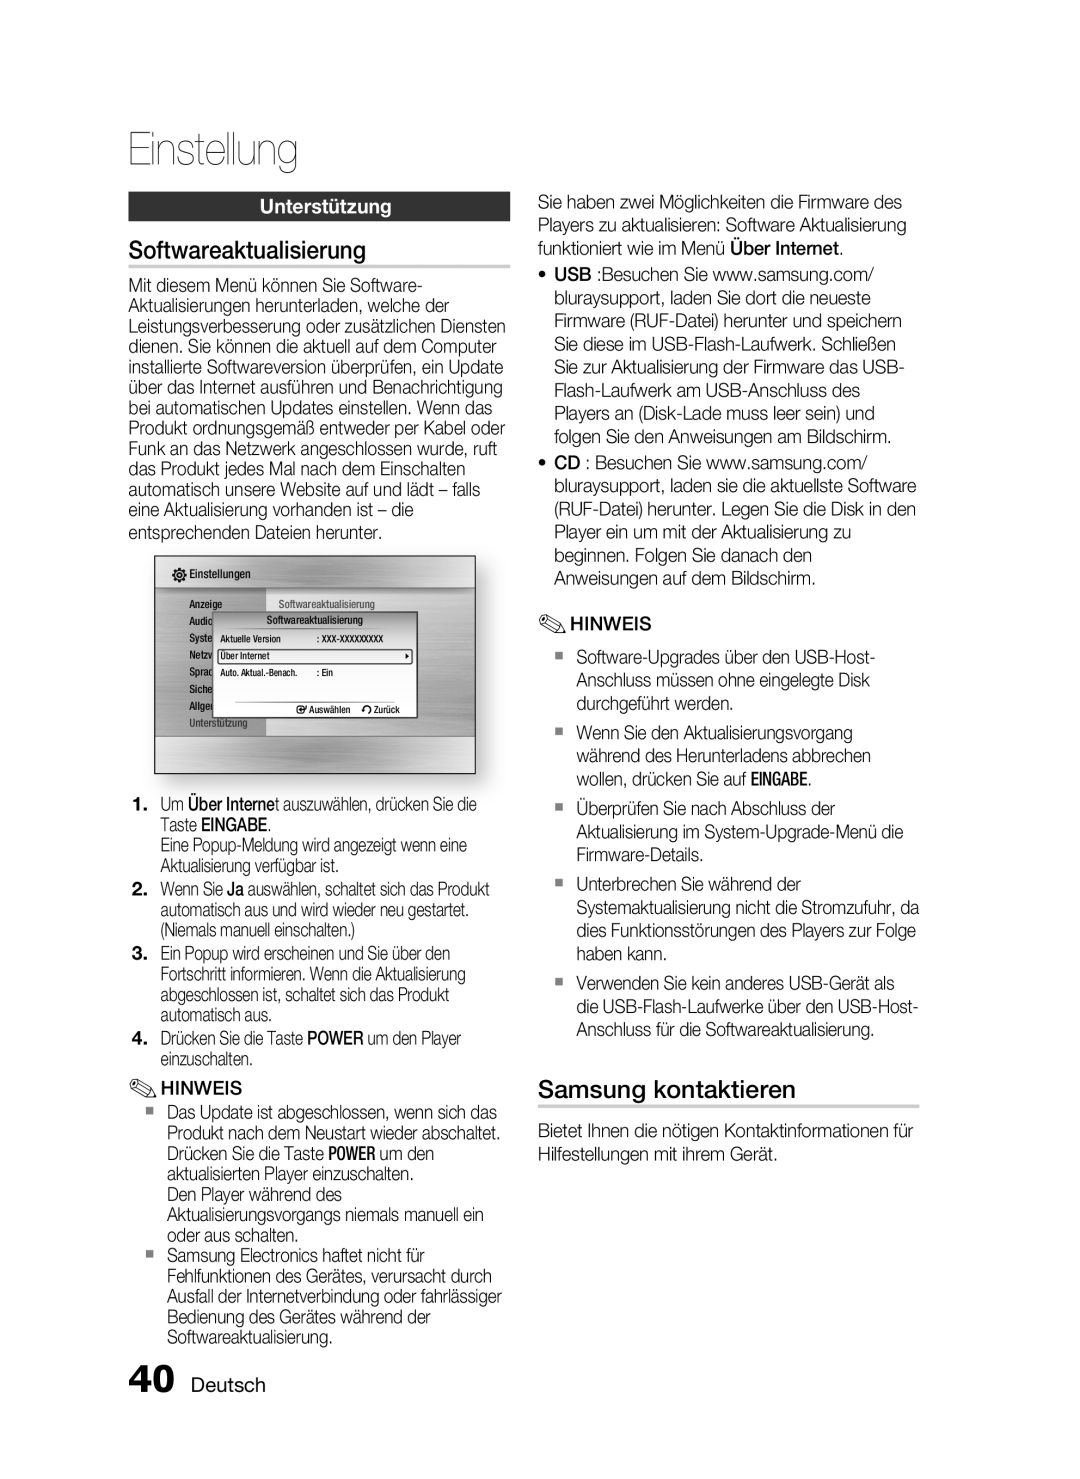 Samsung HT-C6200/XEF manual Softwareaktualisierung, Samsung kontaktieren, Unterstützung, Deutsch, Einstellung 